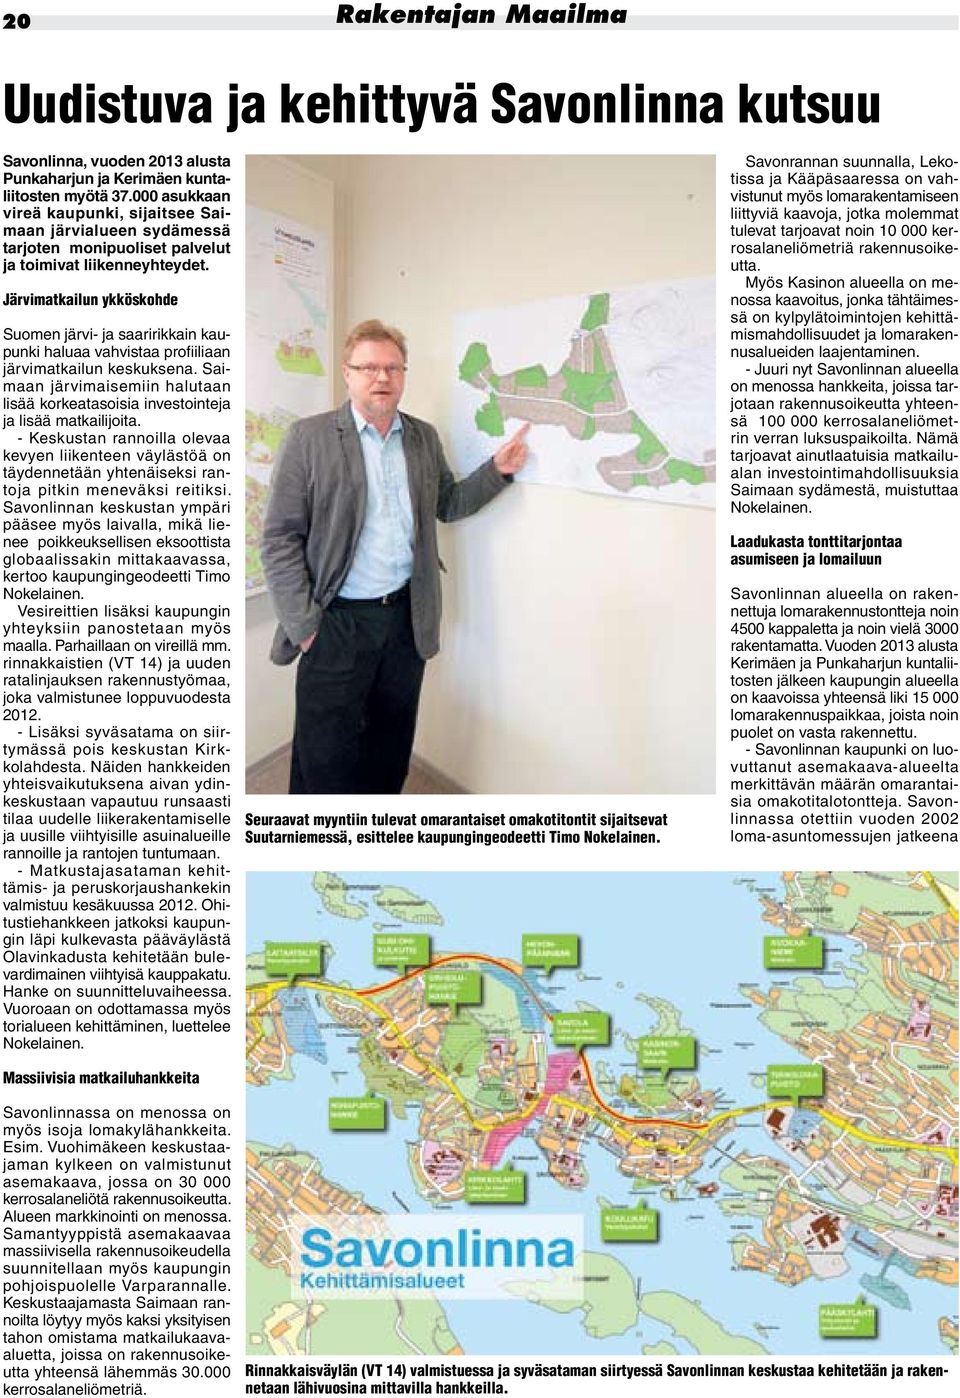 Järvimatkailun ykköskohde Suomen järvi- ja saaririkkain kaupunki haluaa vahvistaa profiiliaan järvimatkailun keskuksena.